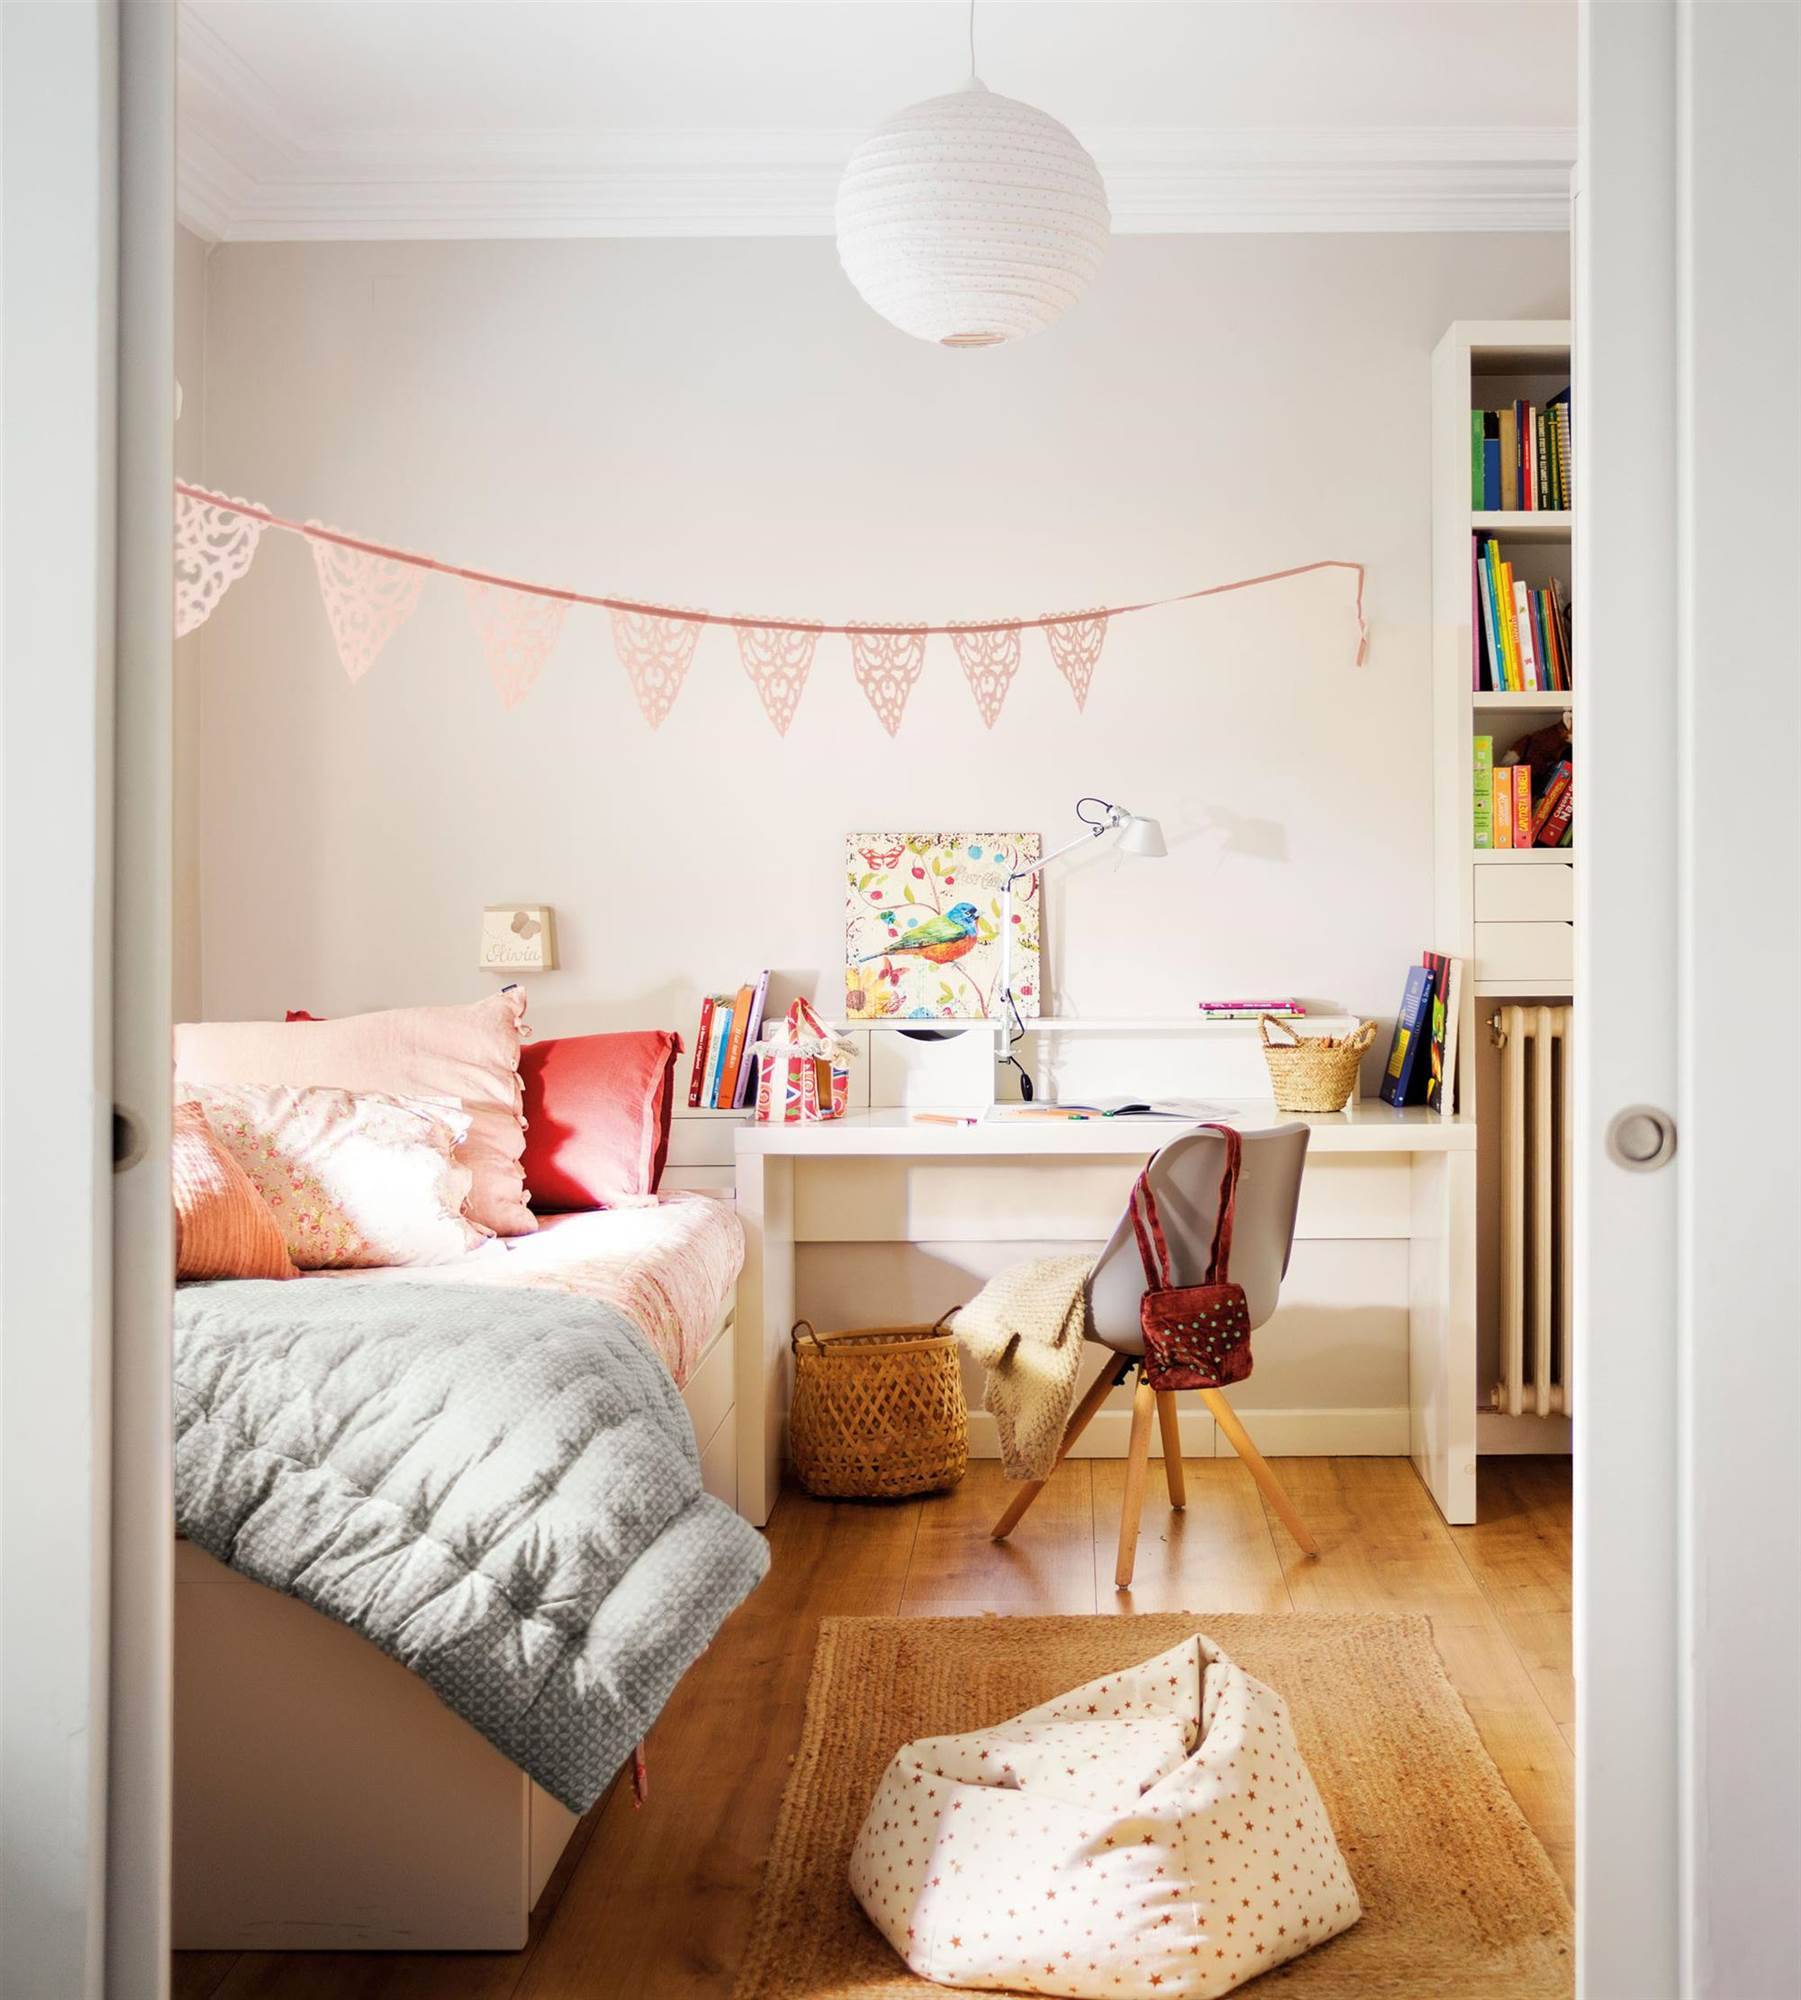 Dormitorio infantil decorado en tonos pastel.